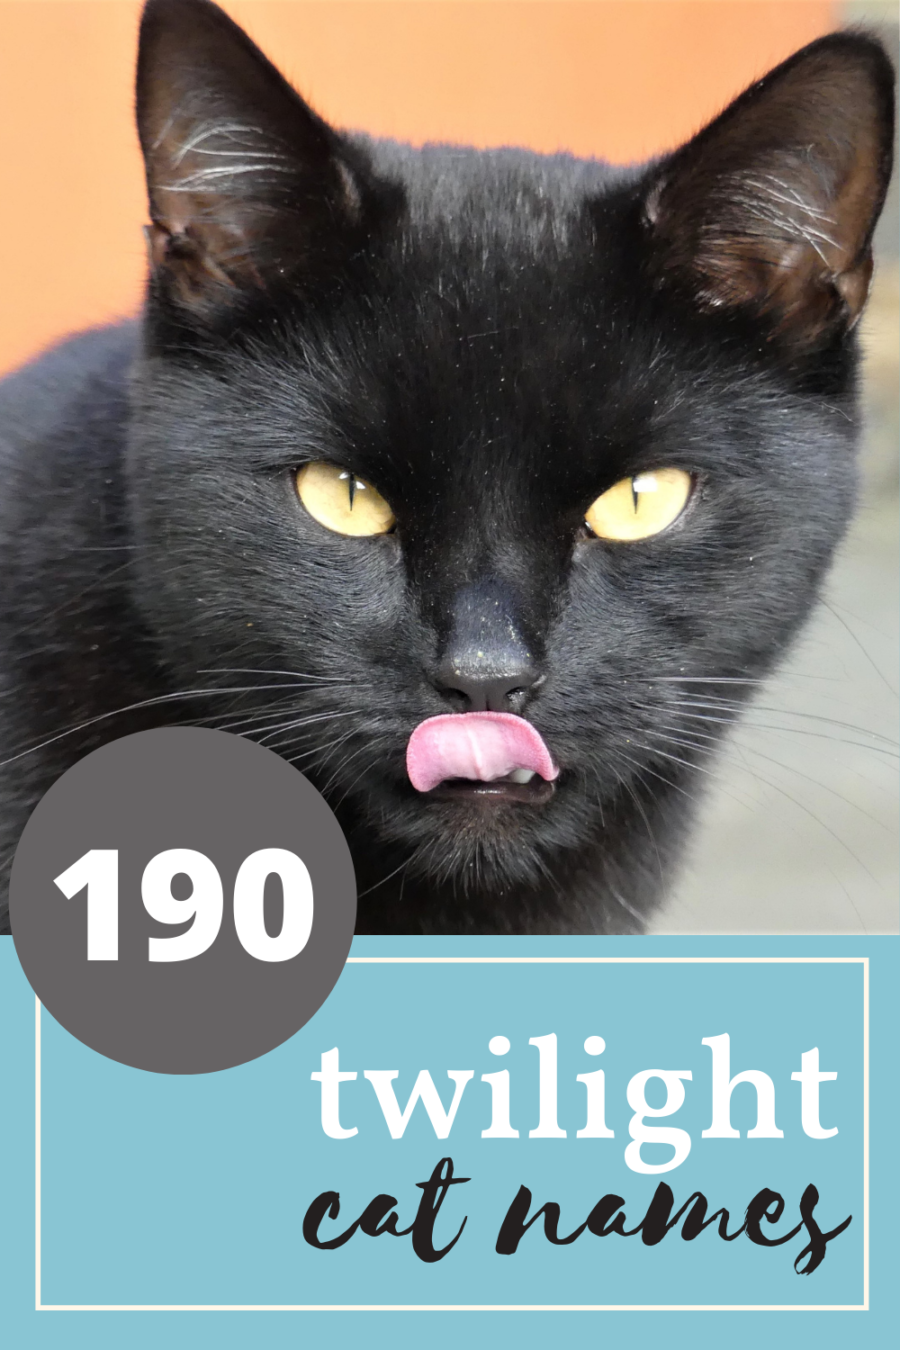 190 twilight cat names